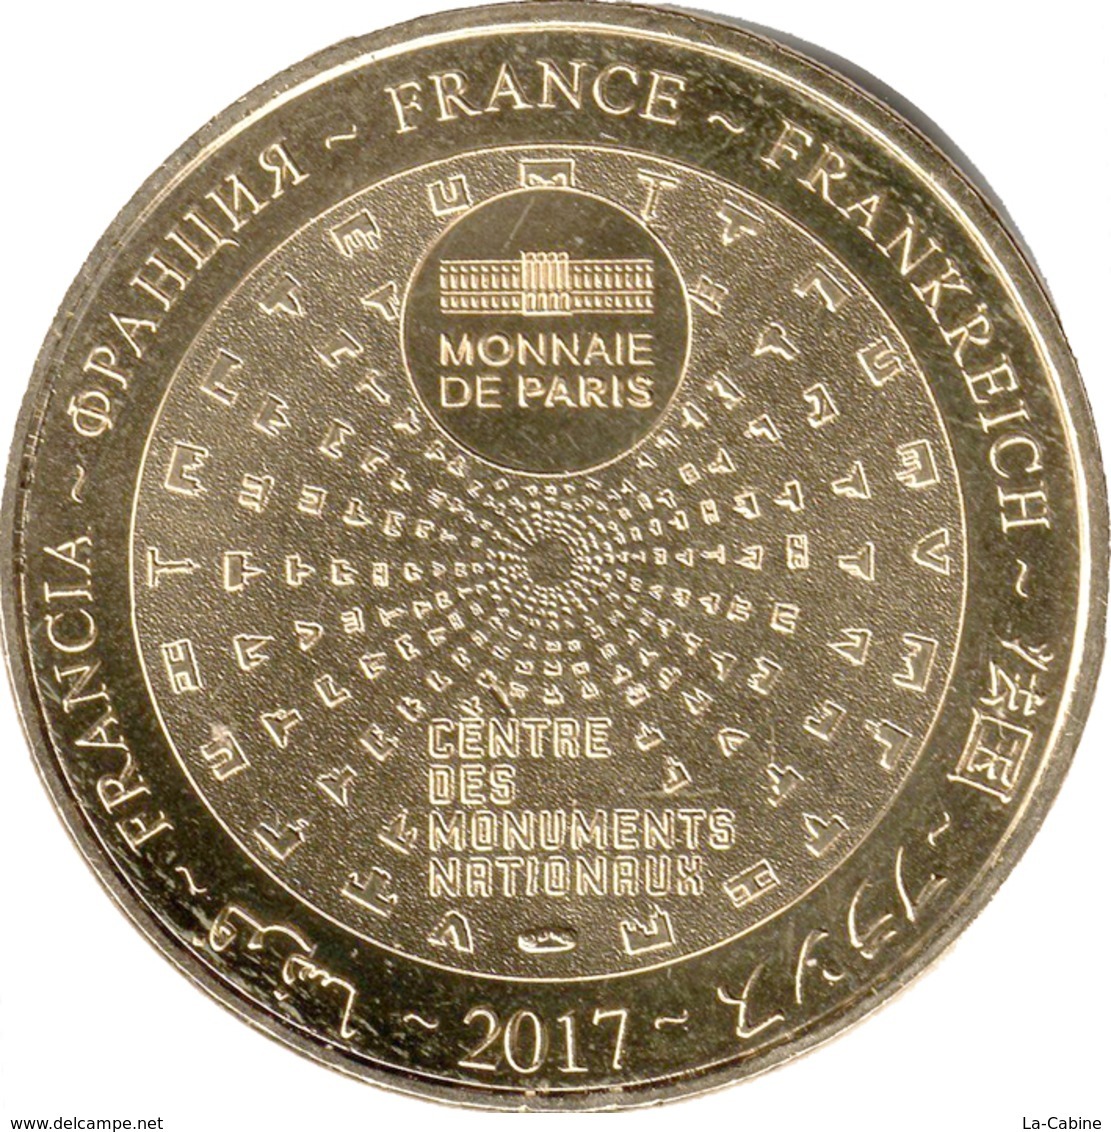 13 MARSEILLE CHÂTEAU D'IF MARSEILLE MÉDAILLE SOUVENIR MONNAIE DE PARIS 2017 JETON TOURISTIQUE MEDALS TOKENS COINS - 2017